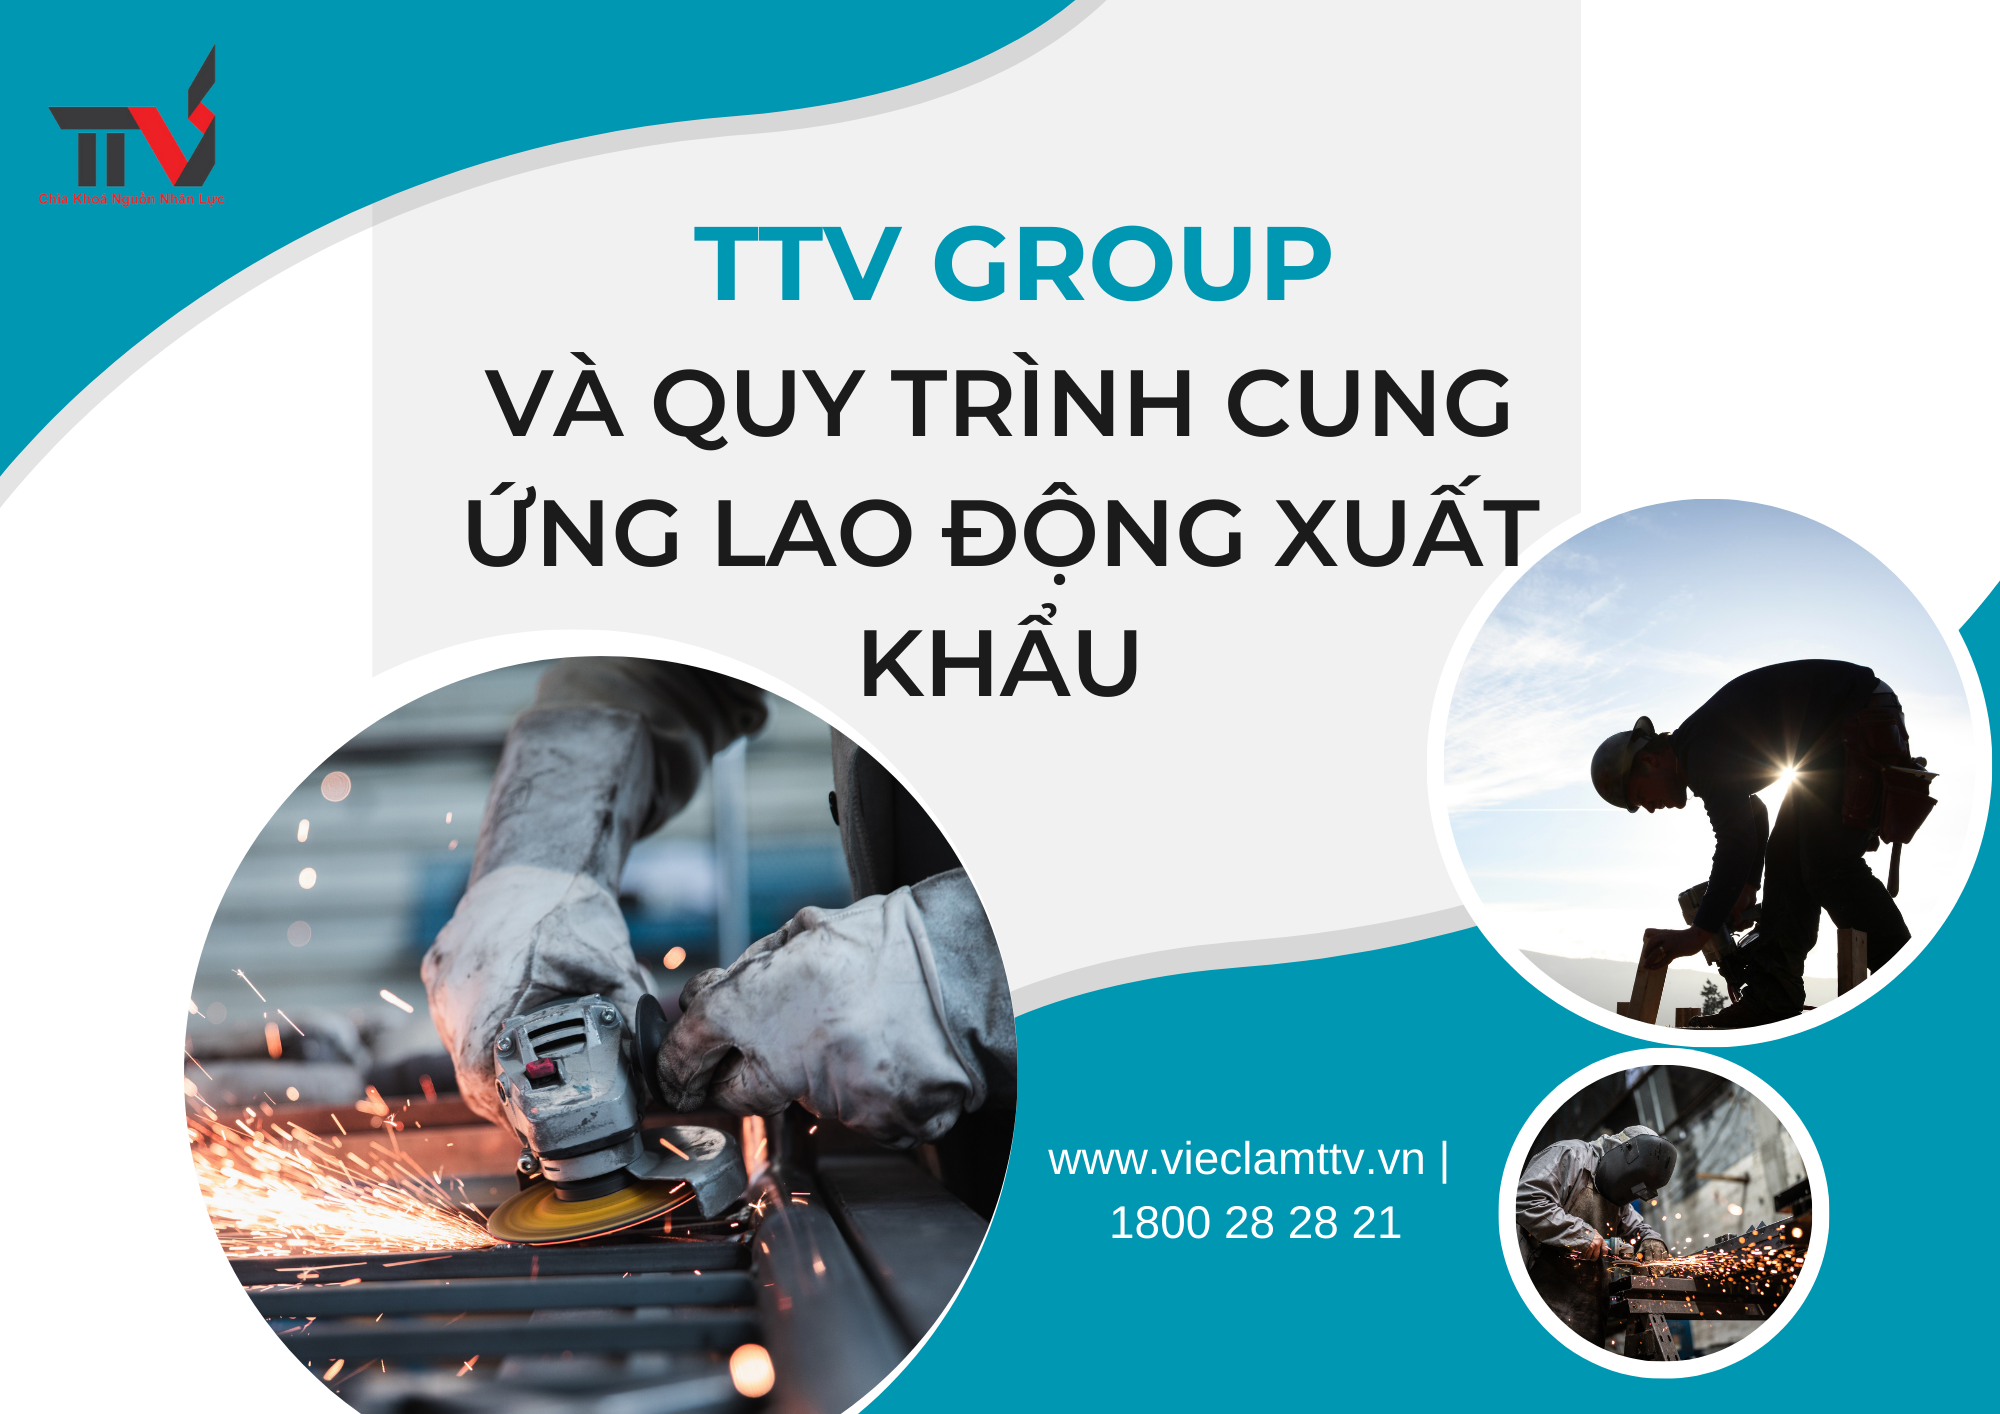 TTV Group và Quy Trình Cung Ứng Lao Động Xuất Khẩu tại Khu Vực Hồ Chí Minh, Bình Dương, Đồng Nai